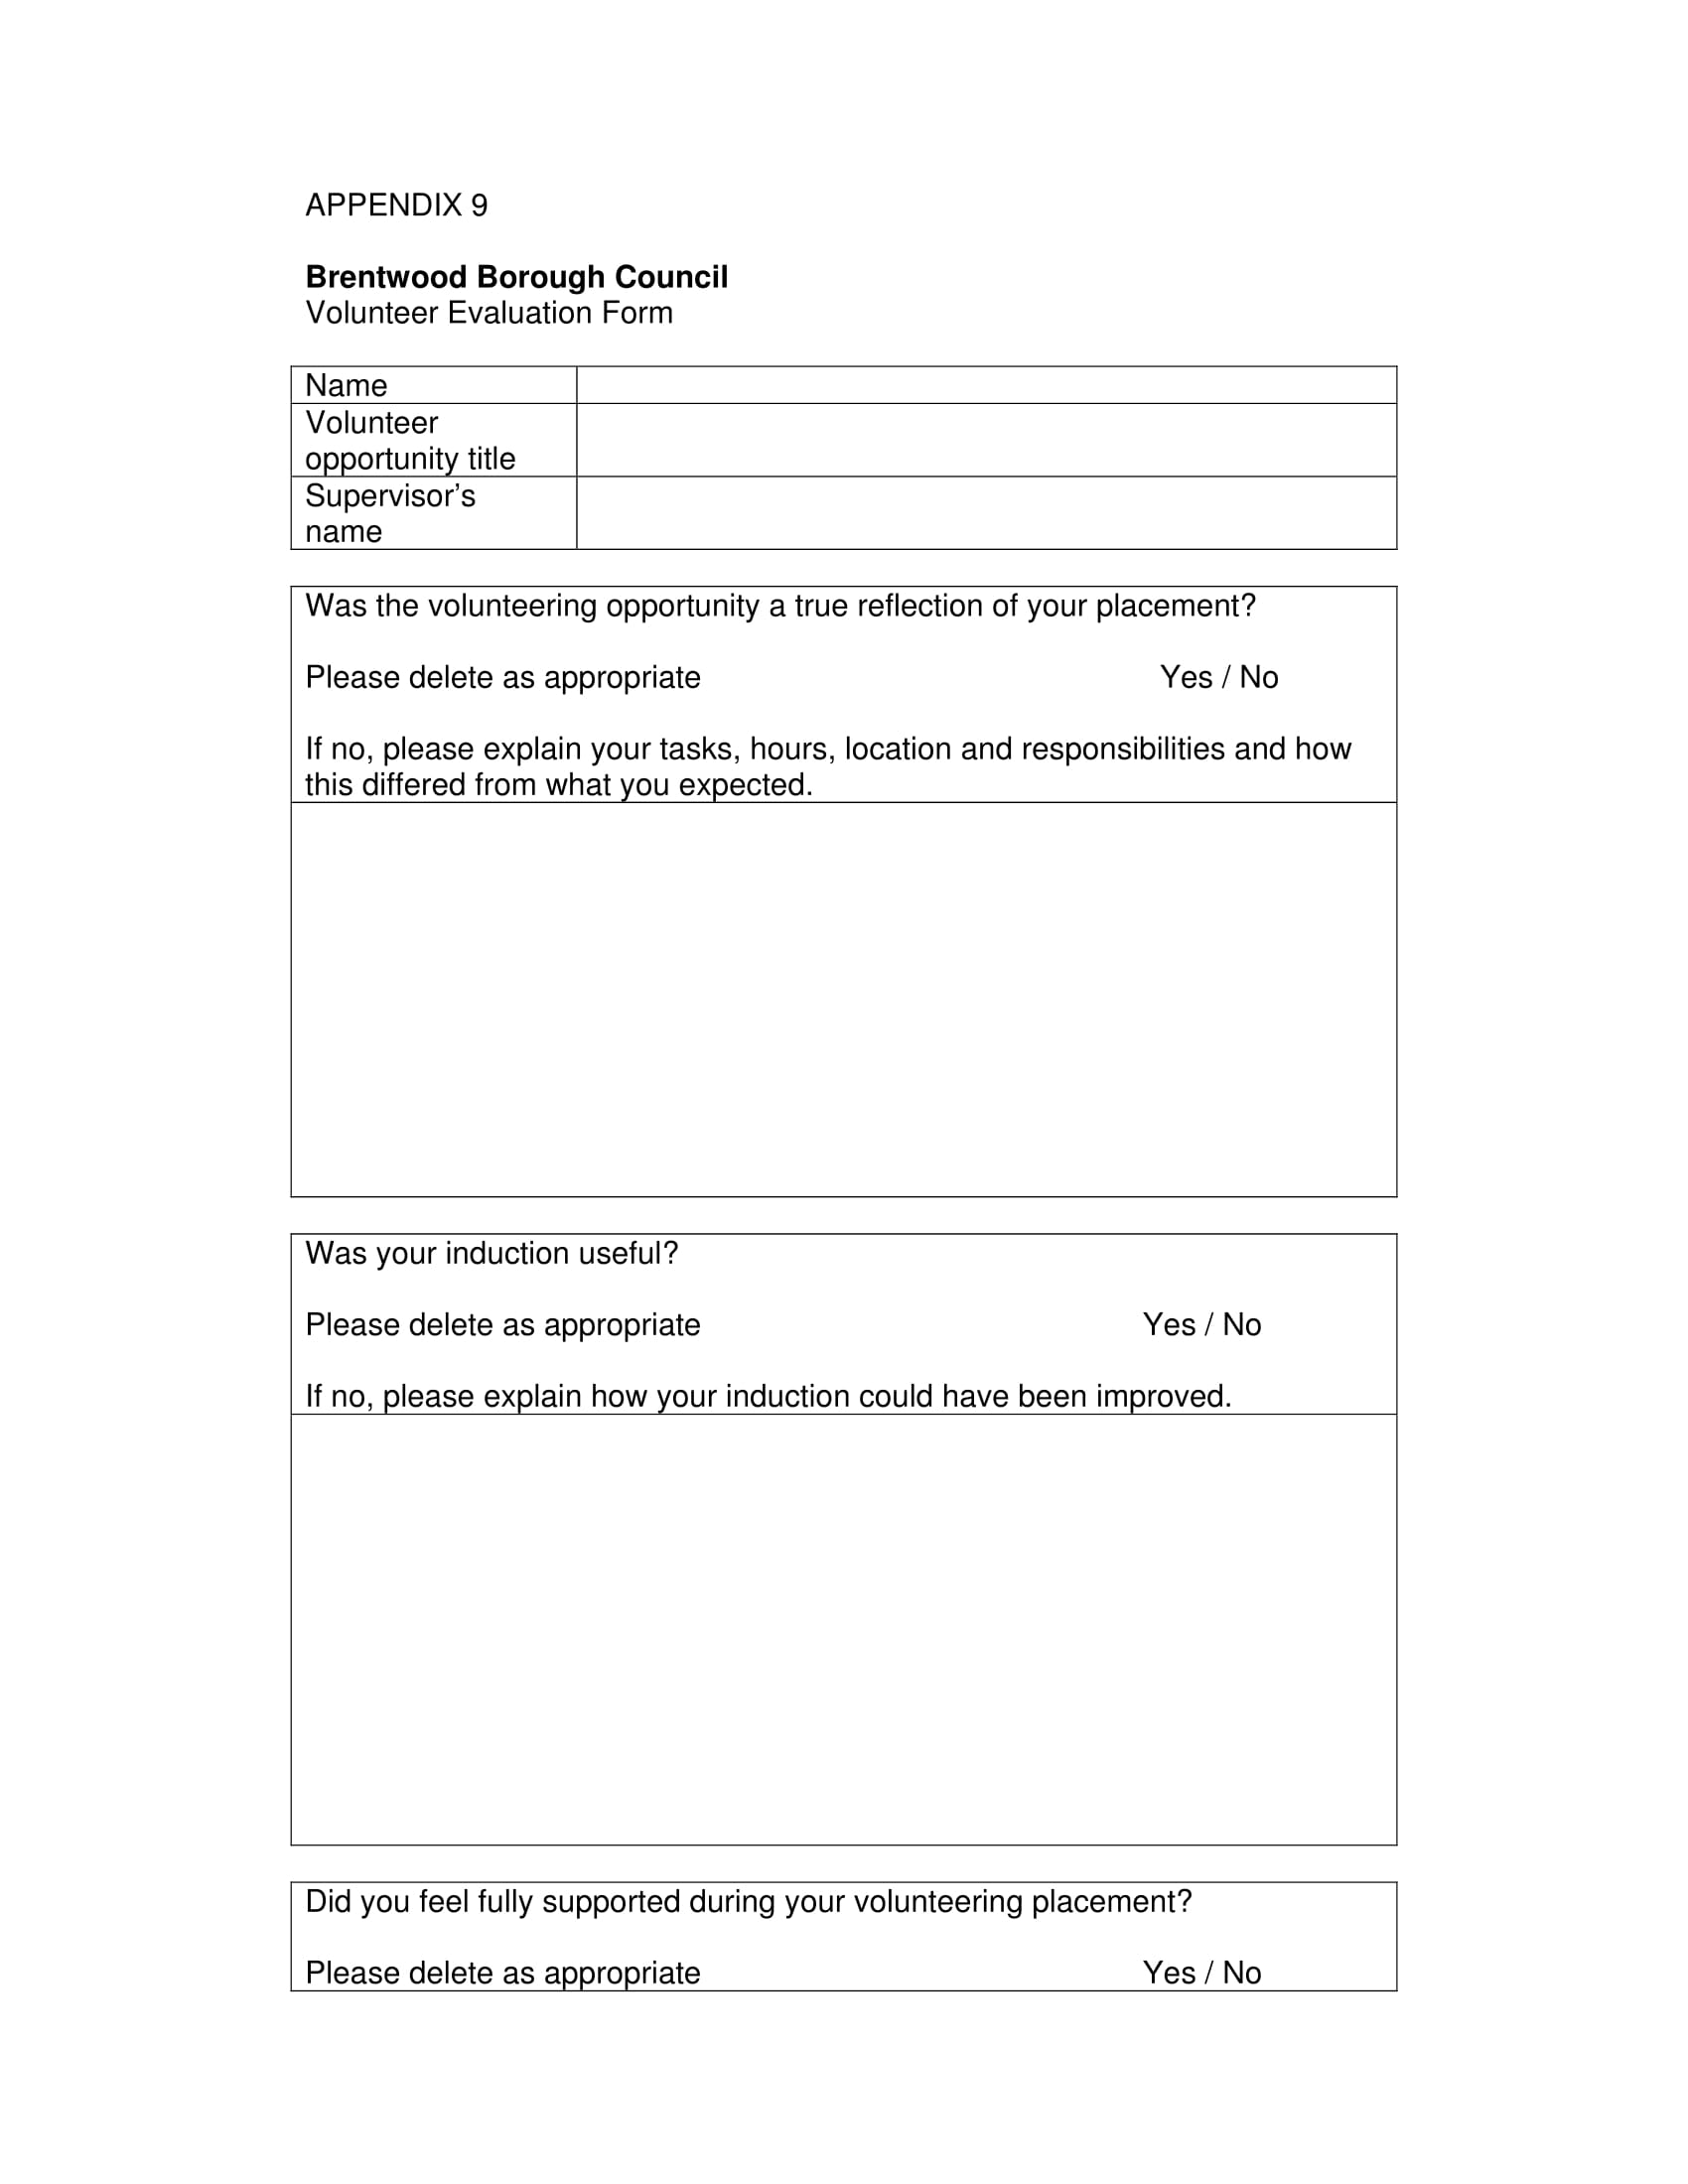 council volunteer evaluation form 1